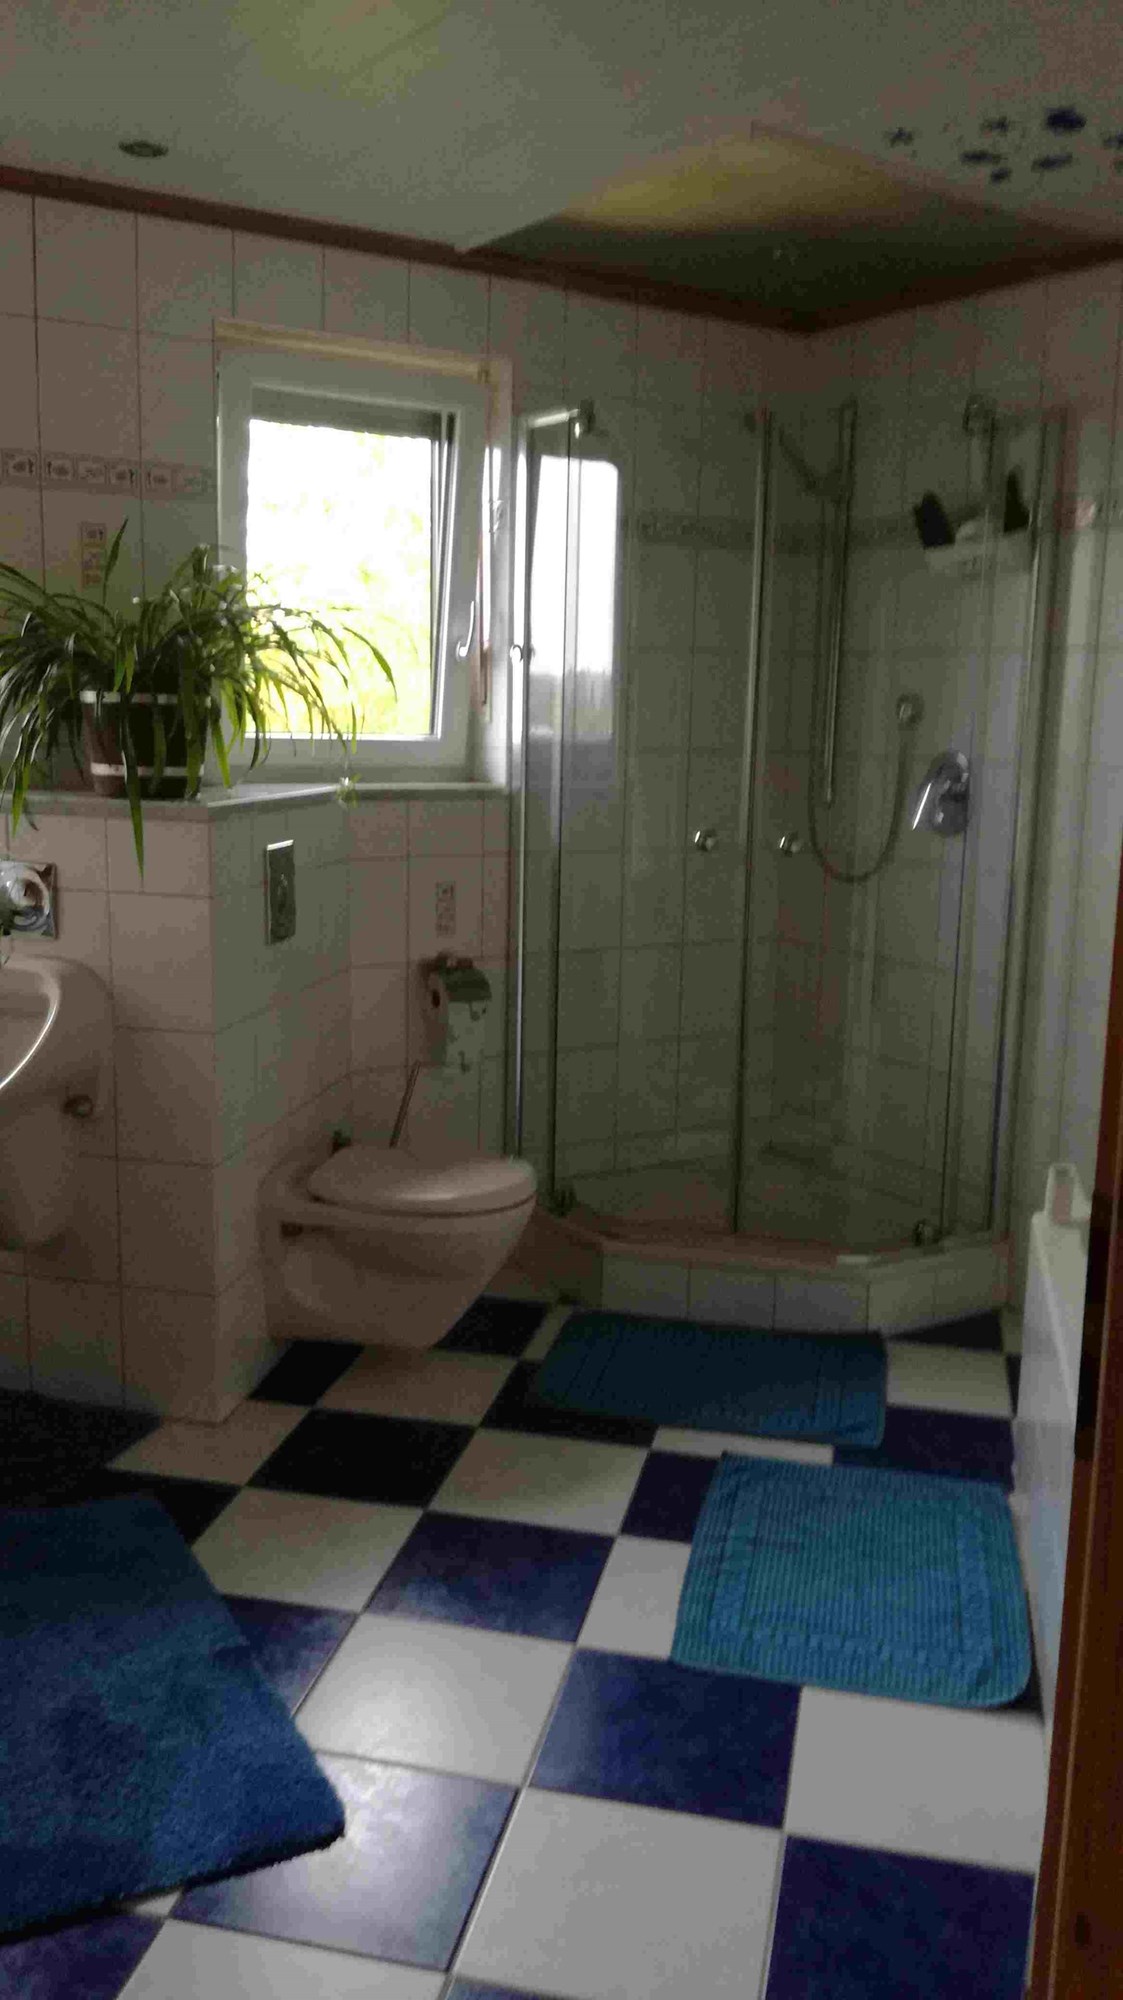 Monteurzimmer: Badezimmer - Unterkunft für Monteure